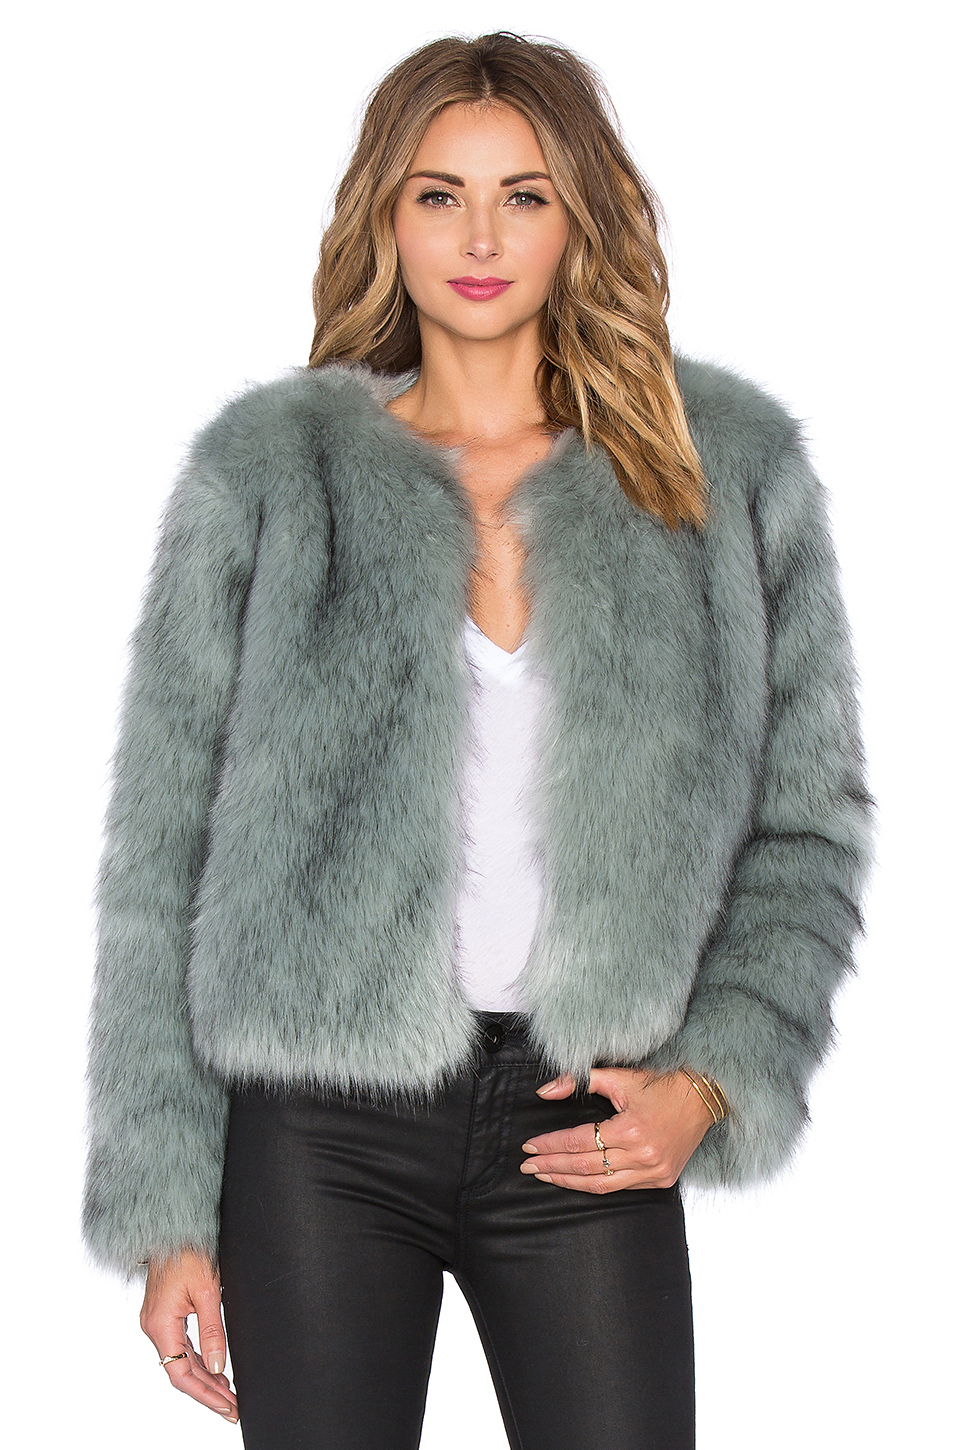 Dating fur coats